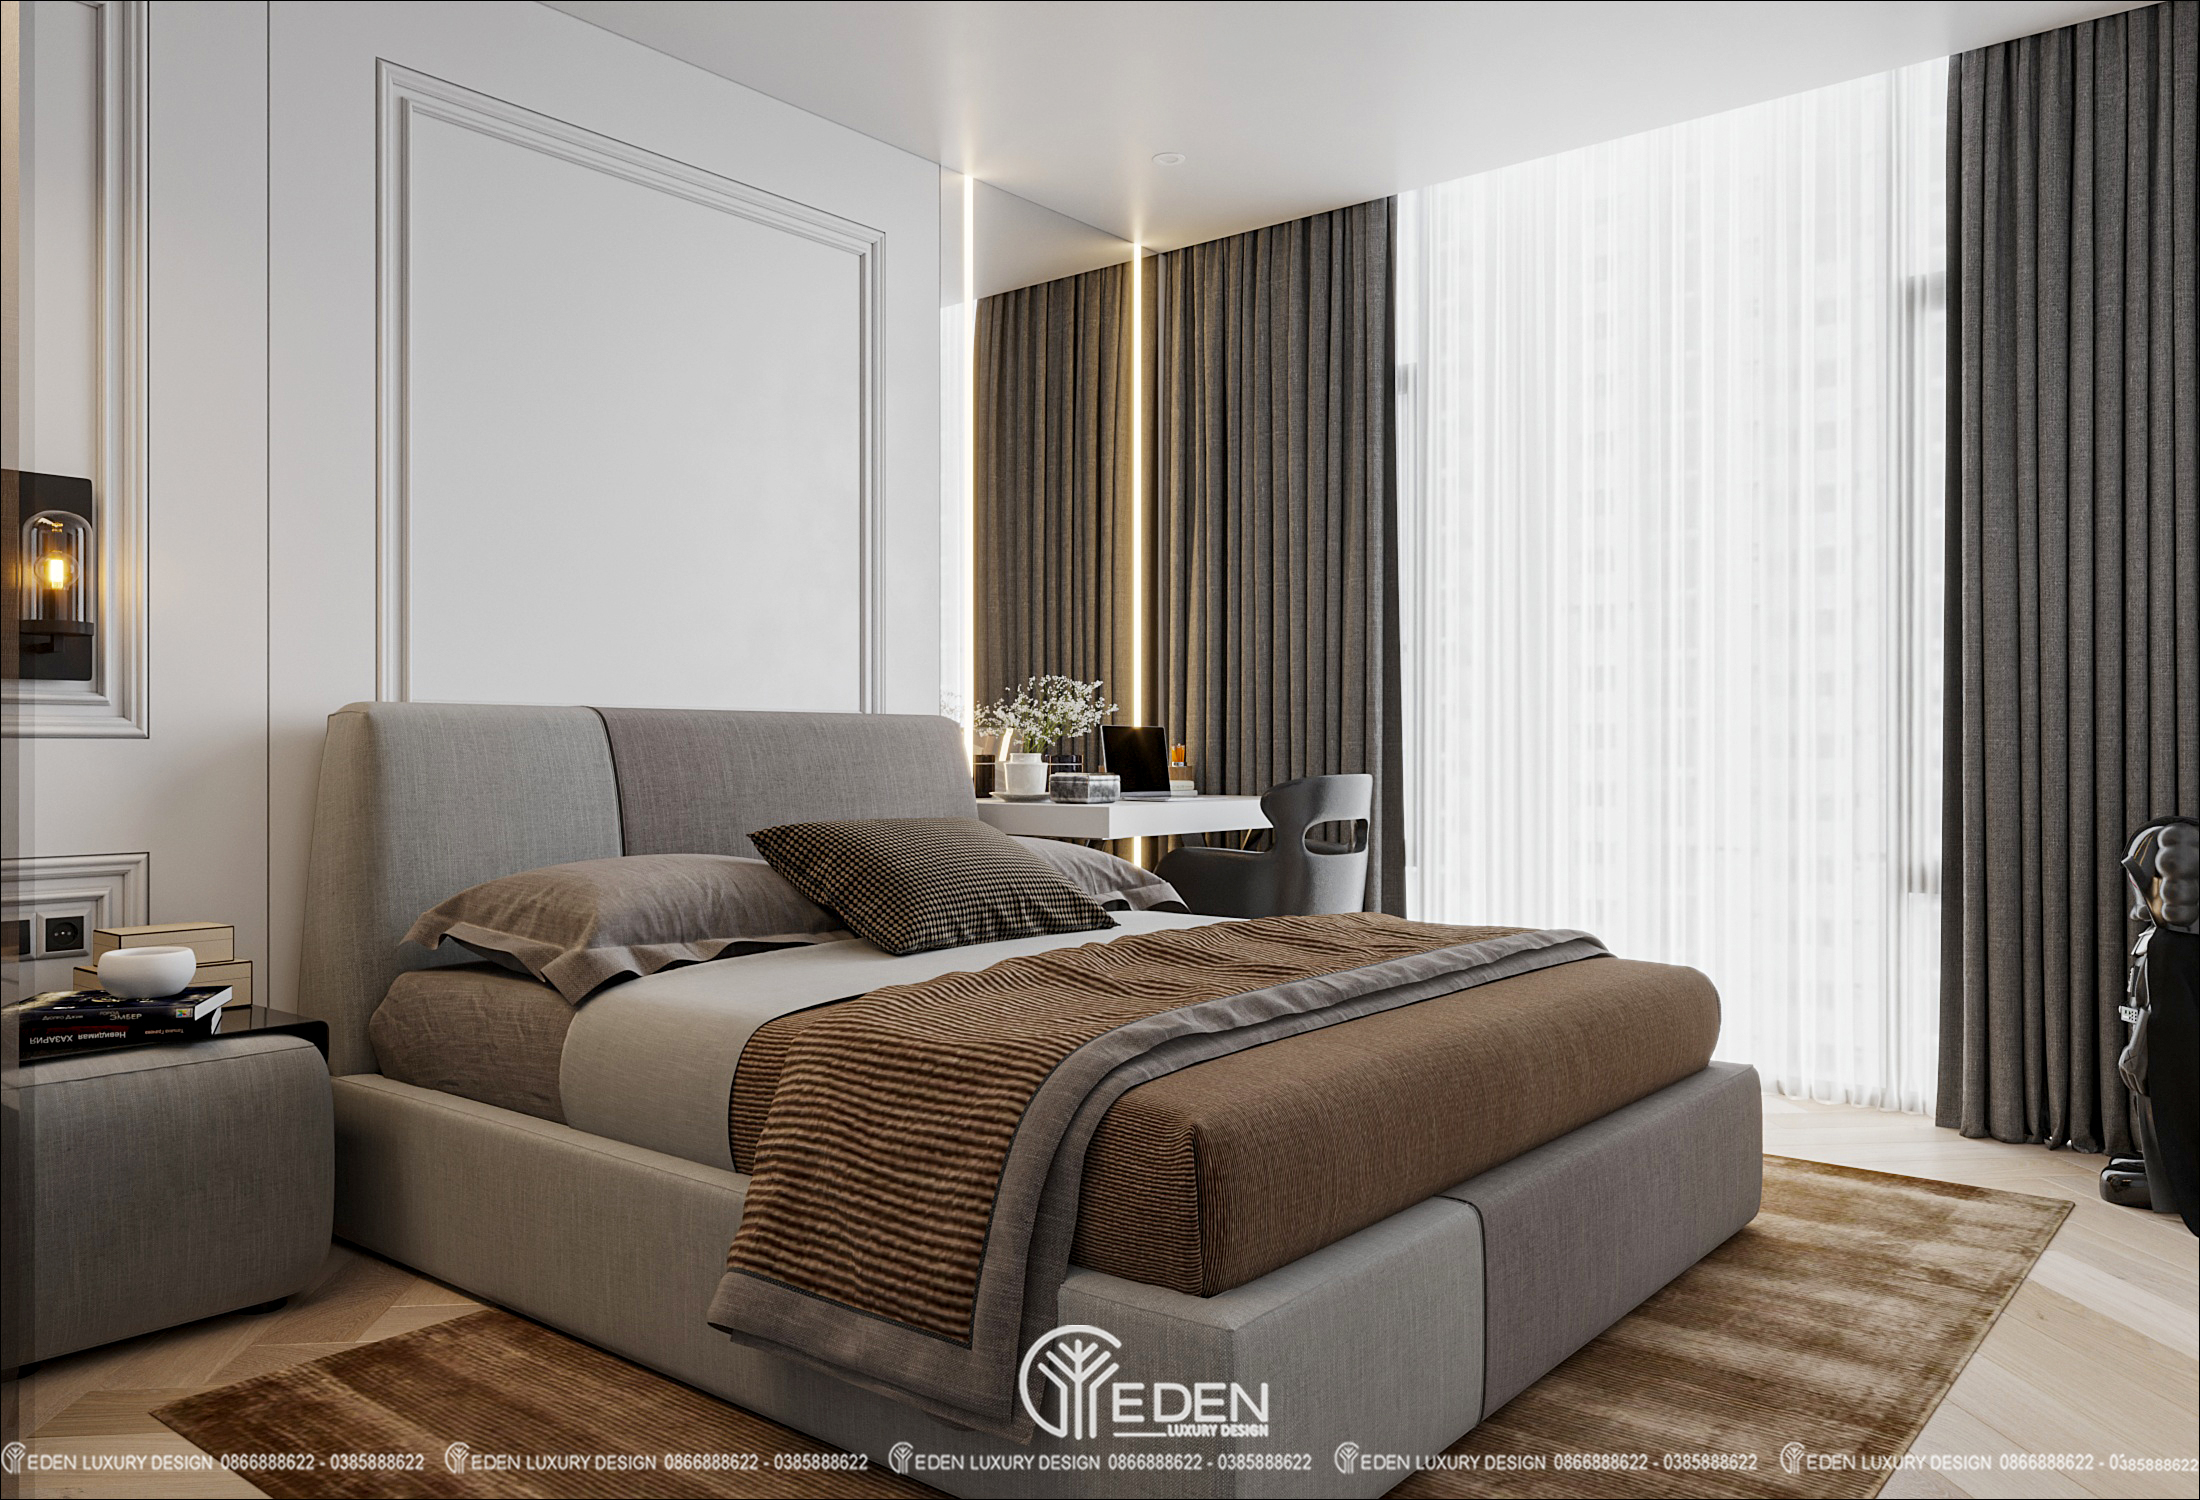 Tấm thảm và bọc nệm màu nâu vàng cùng ánh đèn vàng tạo cảm giác ấm áp, thoải mái, dễ đi vào giấc ngủ.